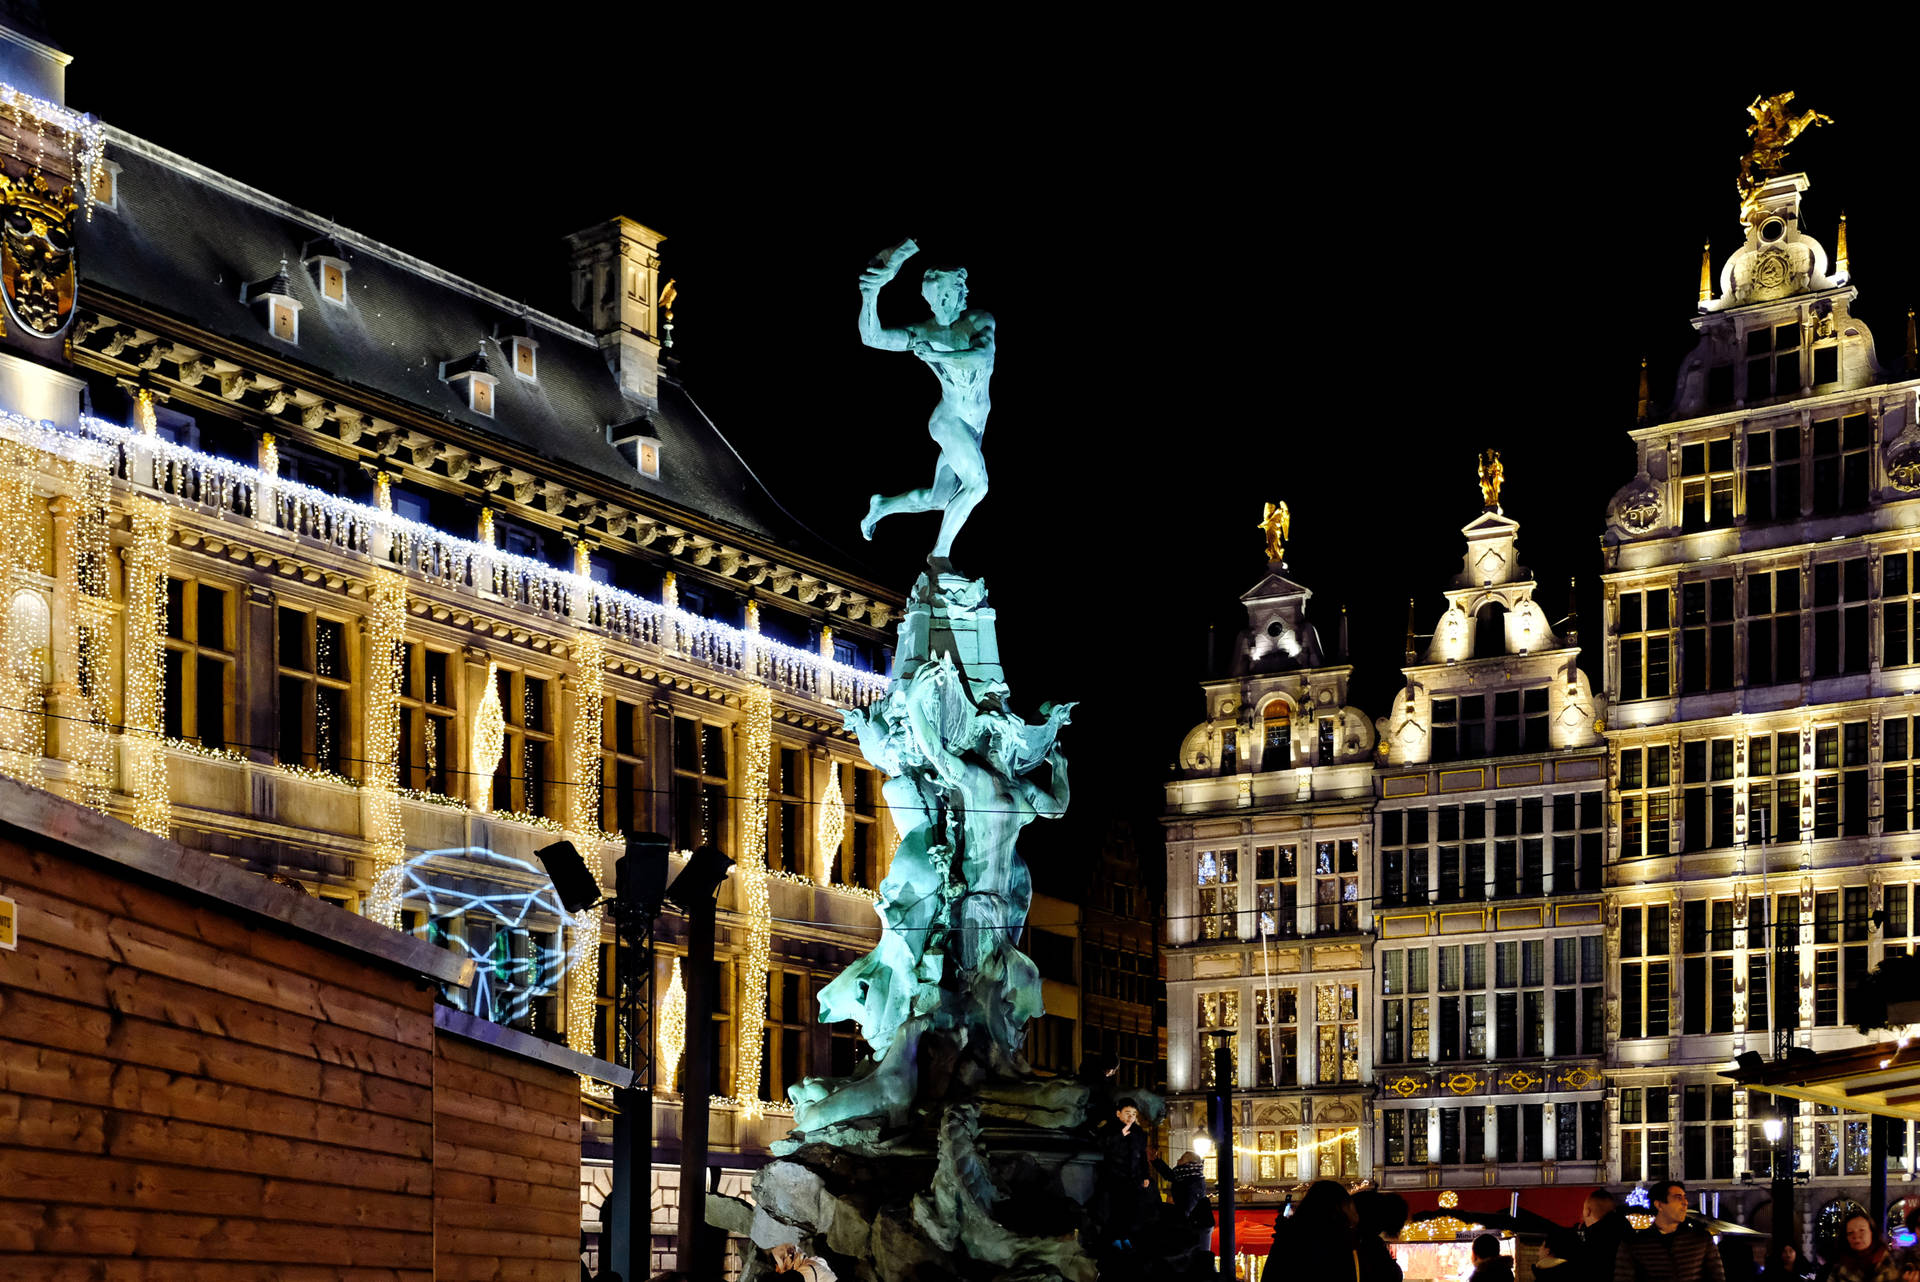 Belgium Brabo's Monument